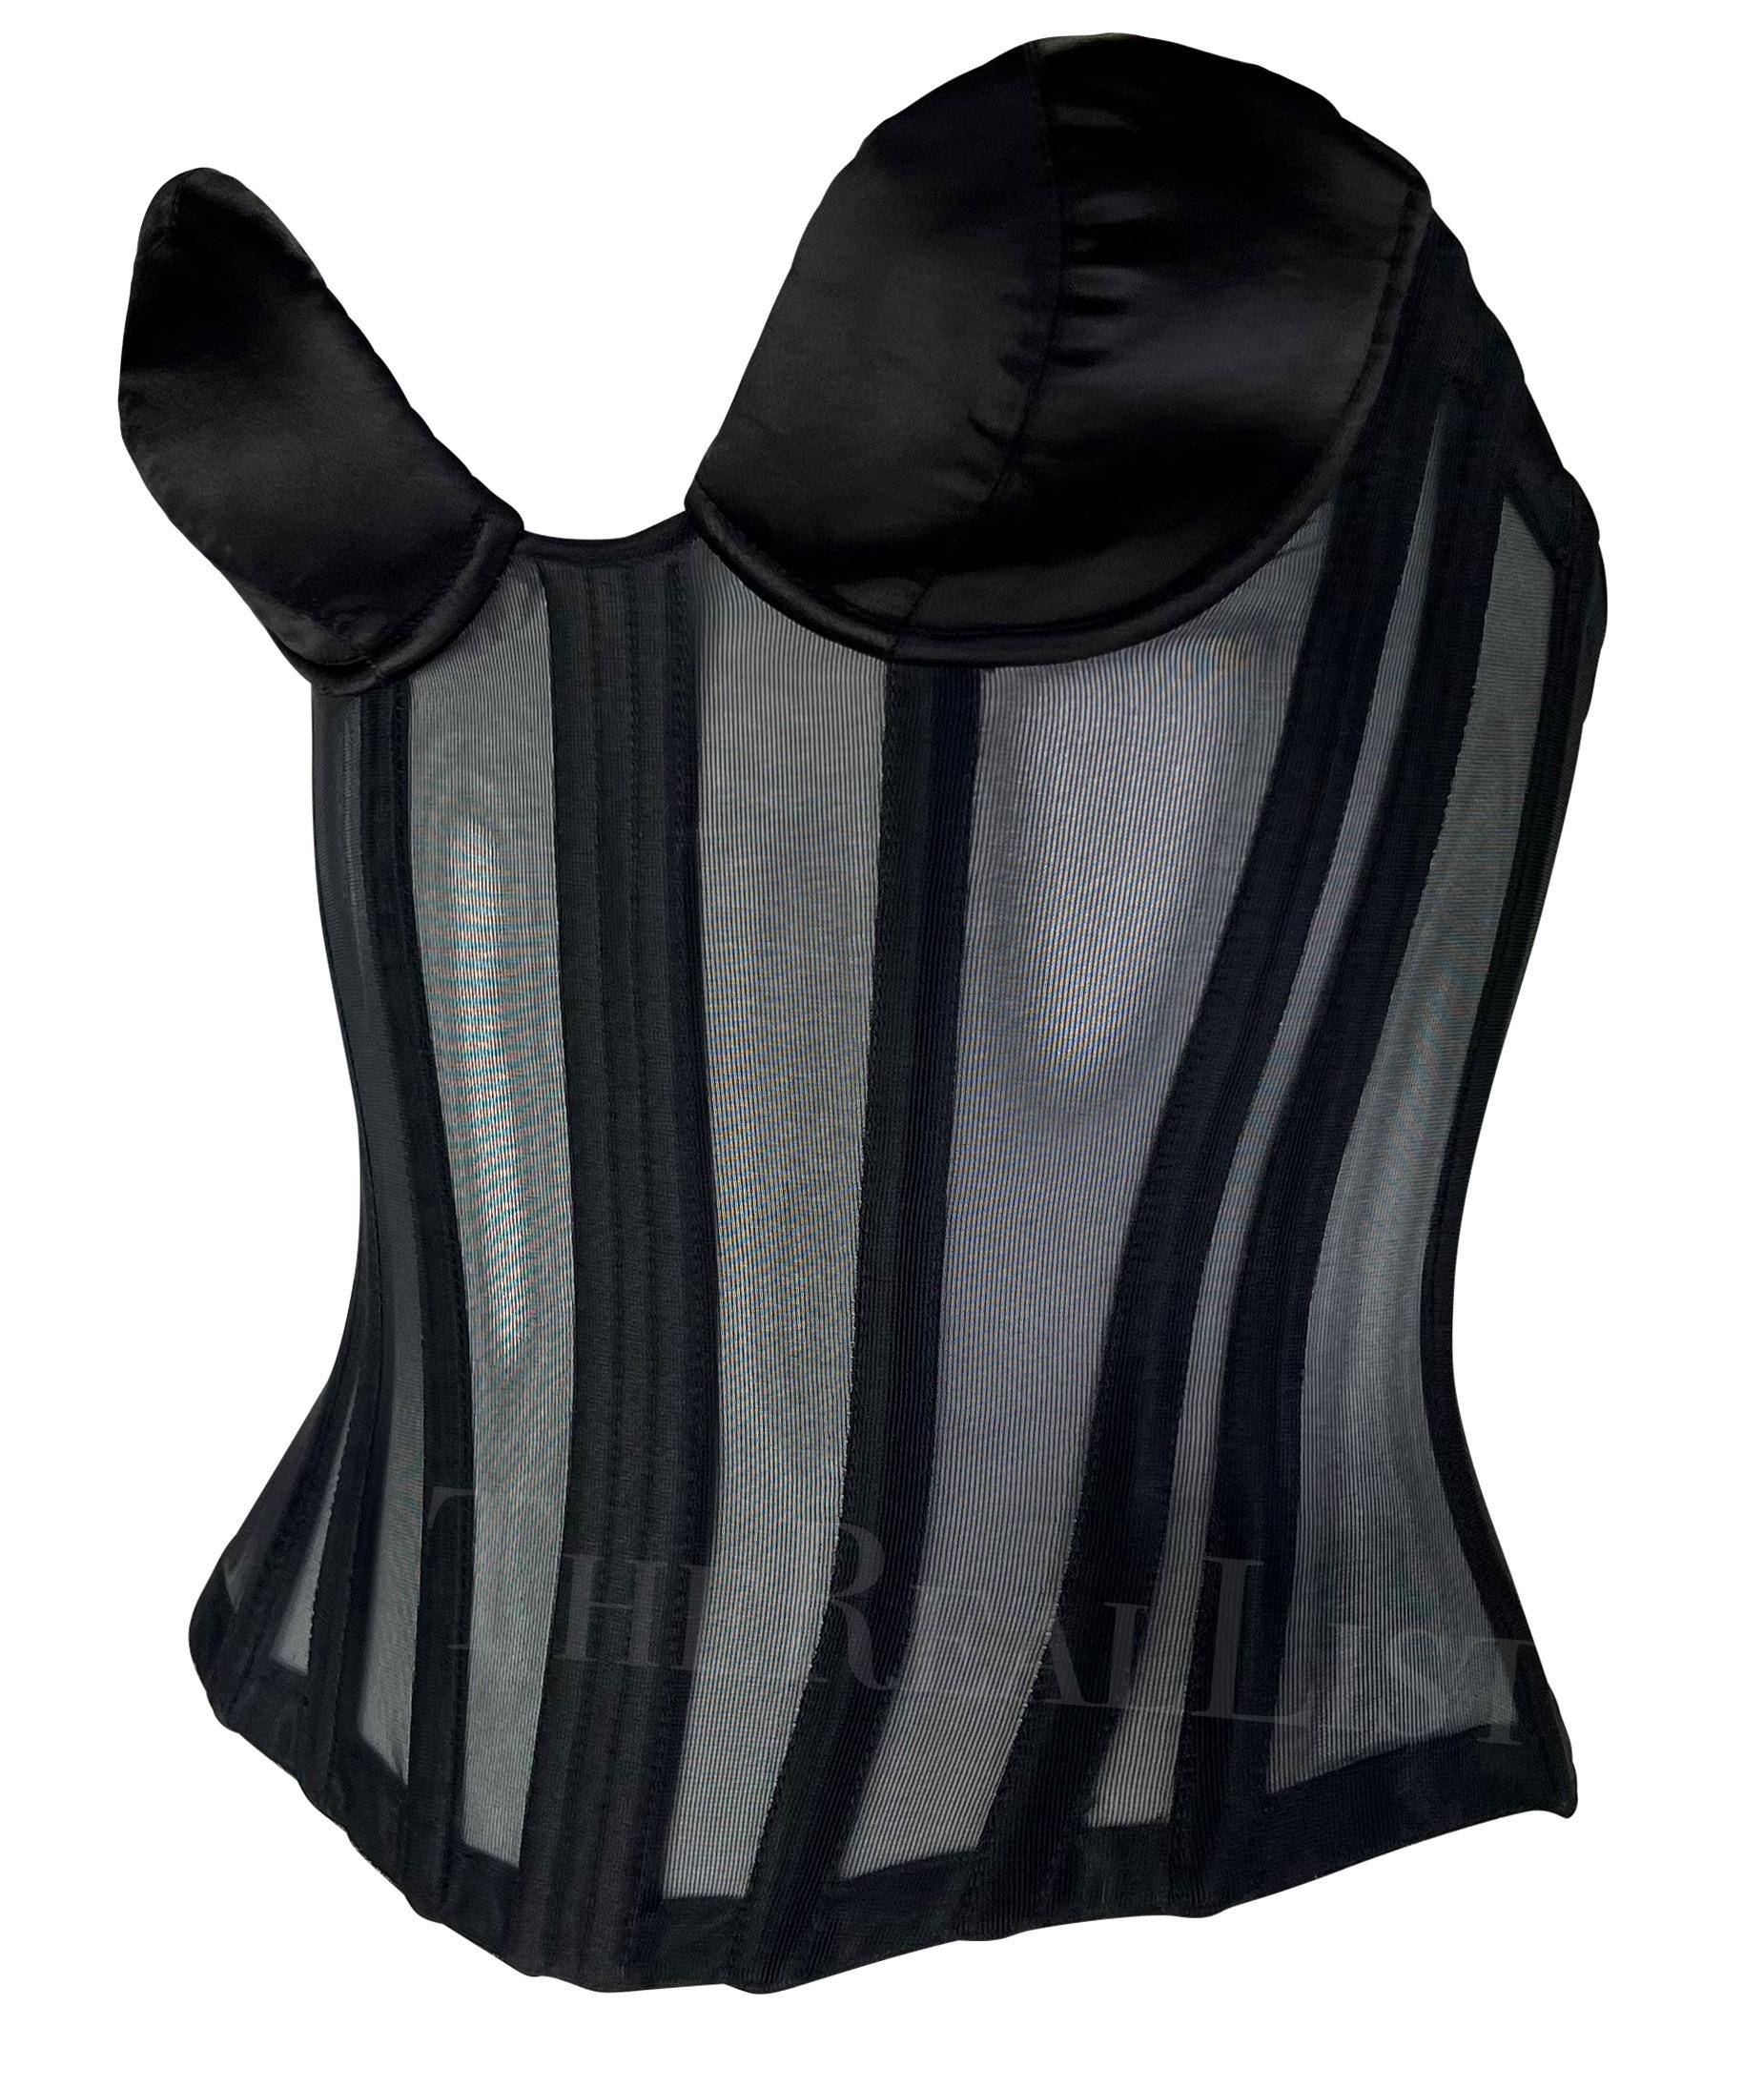 Voici un fabuleux corset noir Thierry Mugler by Mr. Pearl, conçu par Manfred Mugler. Datant de la fin des années 1990, ce corset de forme est doté d'une armature en satin noir et d'un tissu noir très transparent entre chaque panneau. Doté d'un large